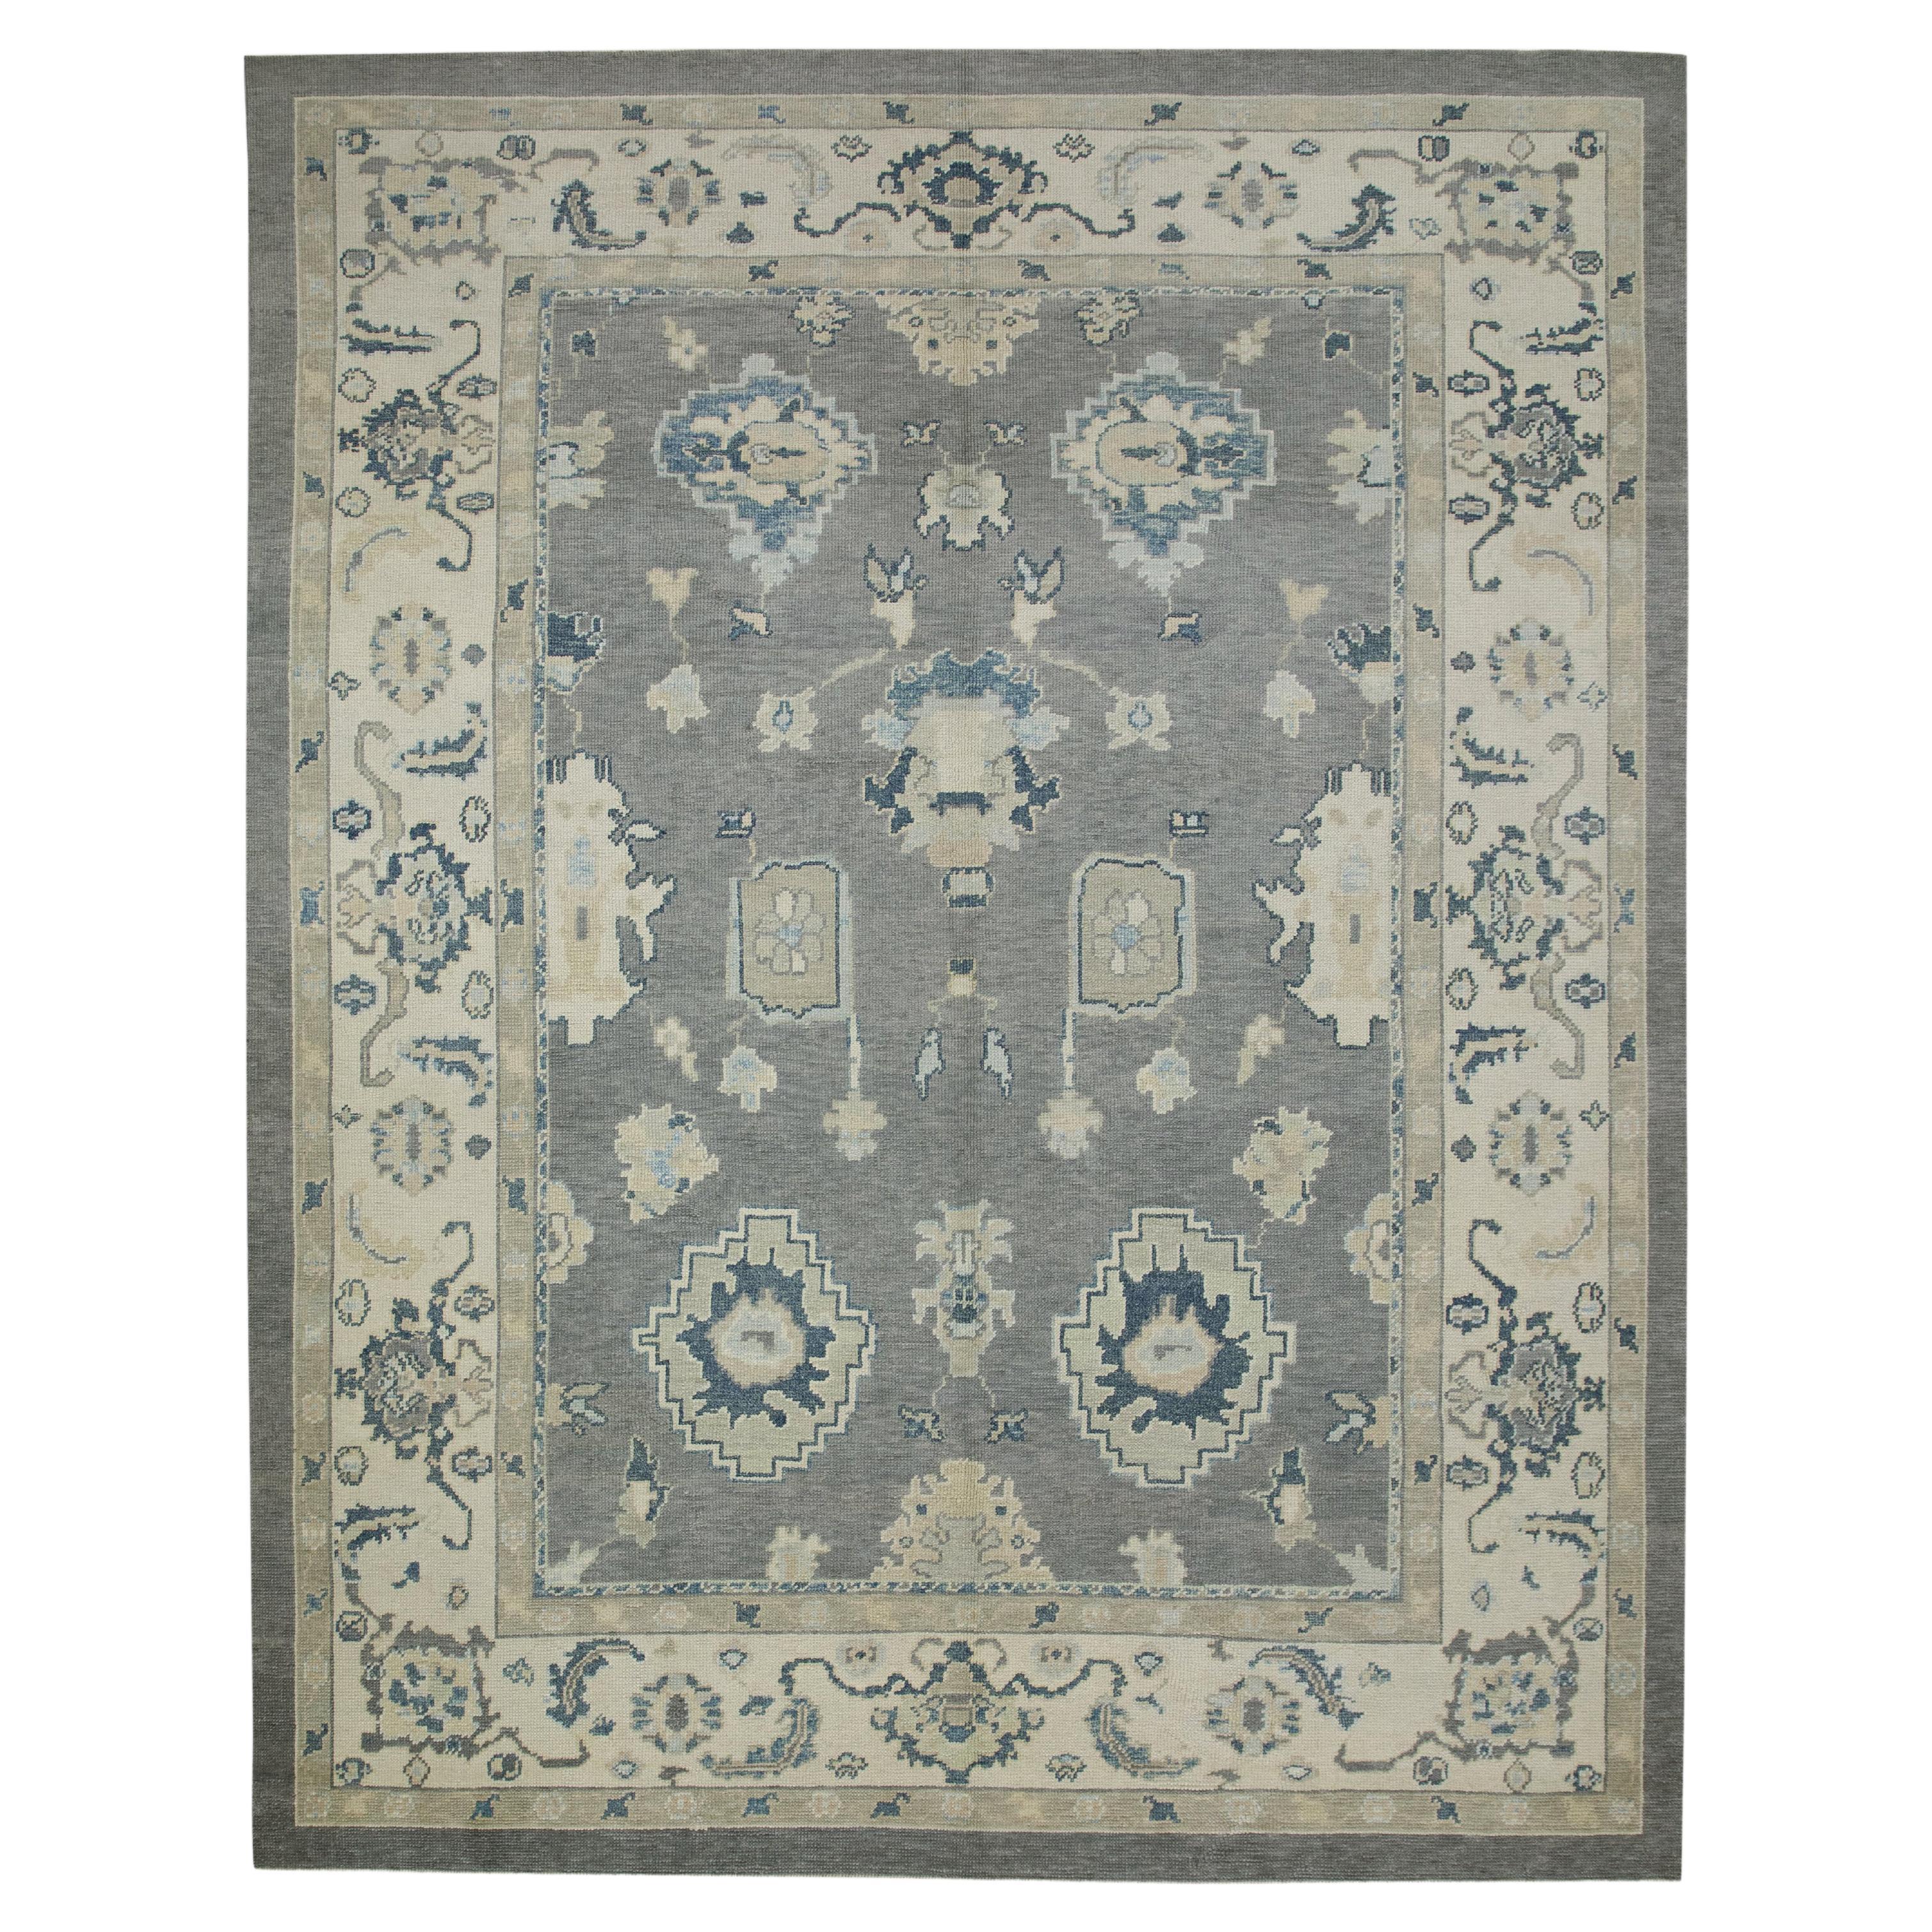 Handgewebter türkischer Oushak-Teppich aus Wolle in Grau & Blau mit Blumenmuster 8'3" x 10'6"